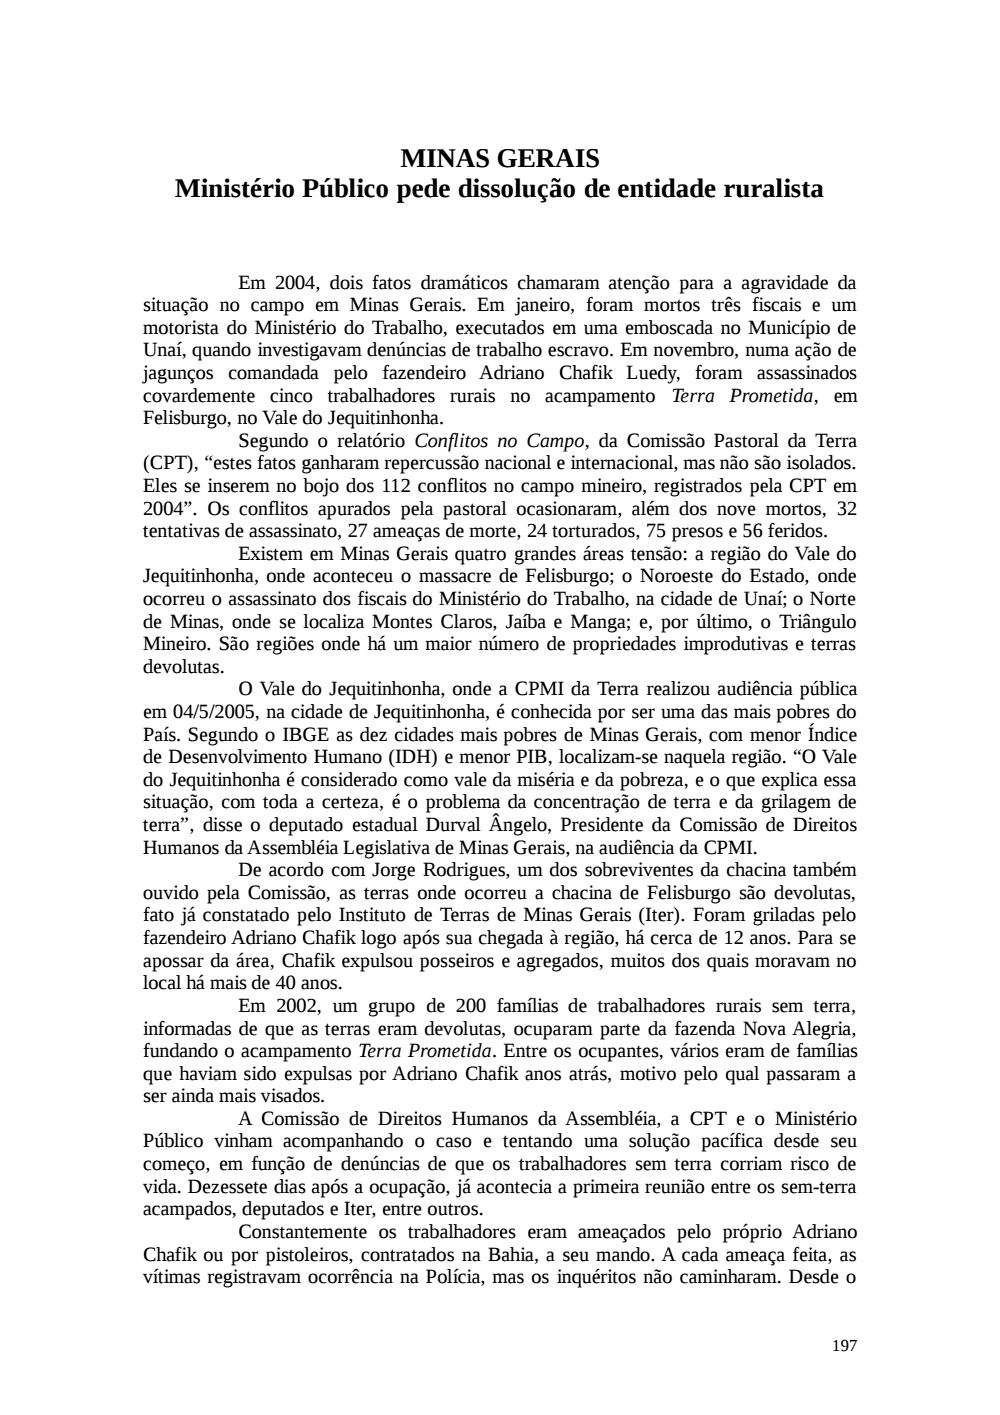 Page 197 from Relatório final da comissão